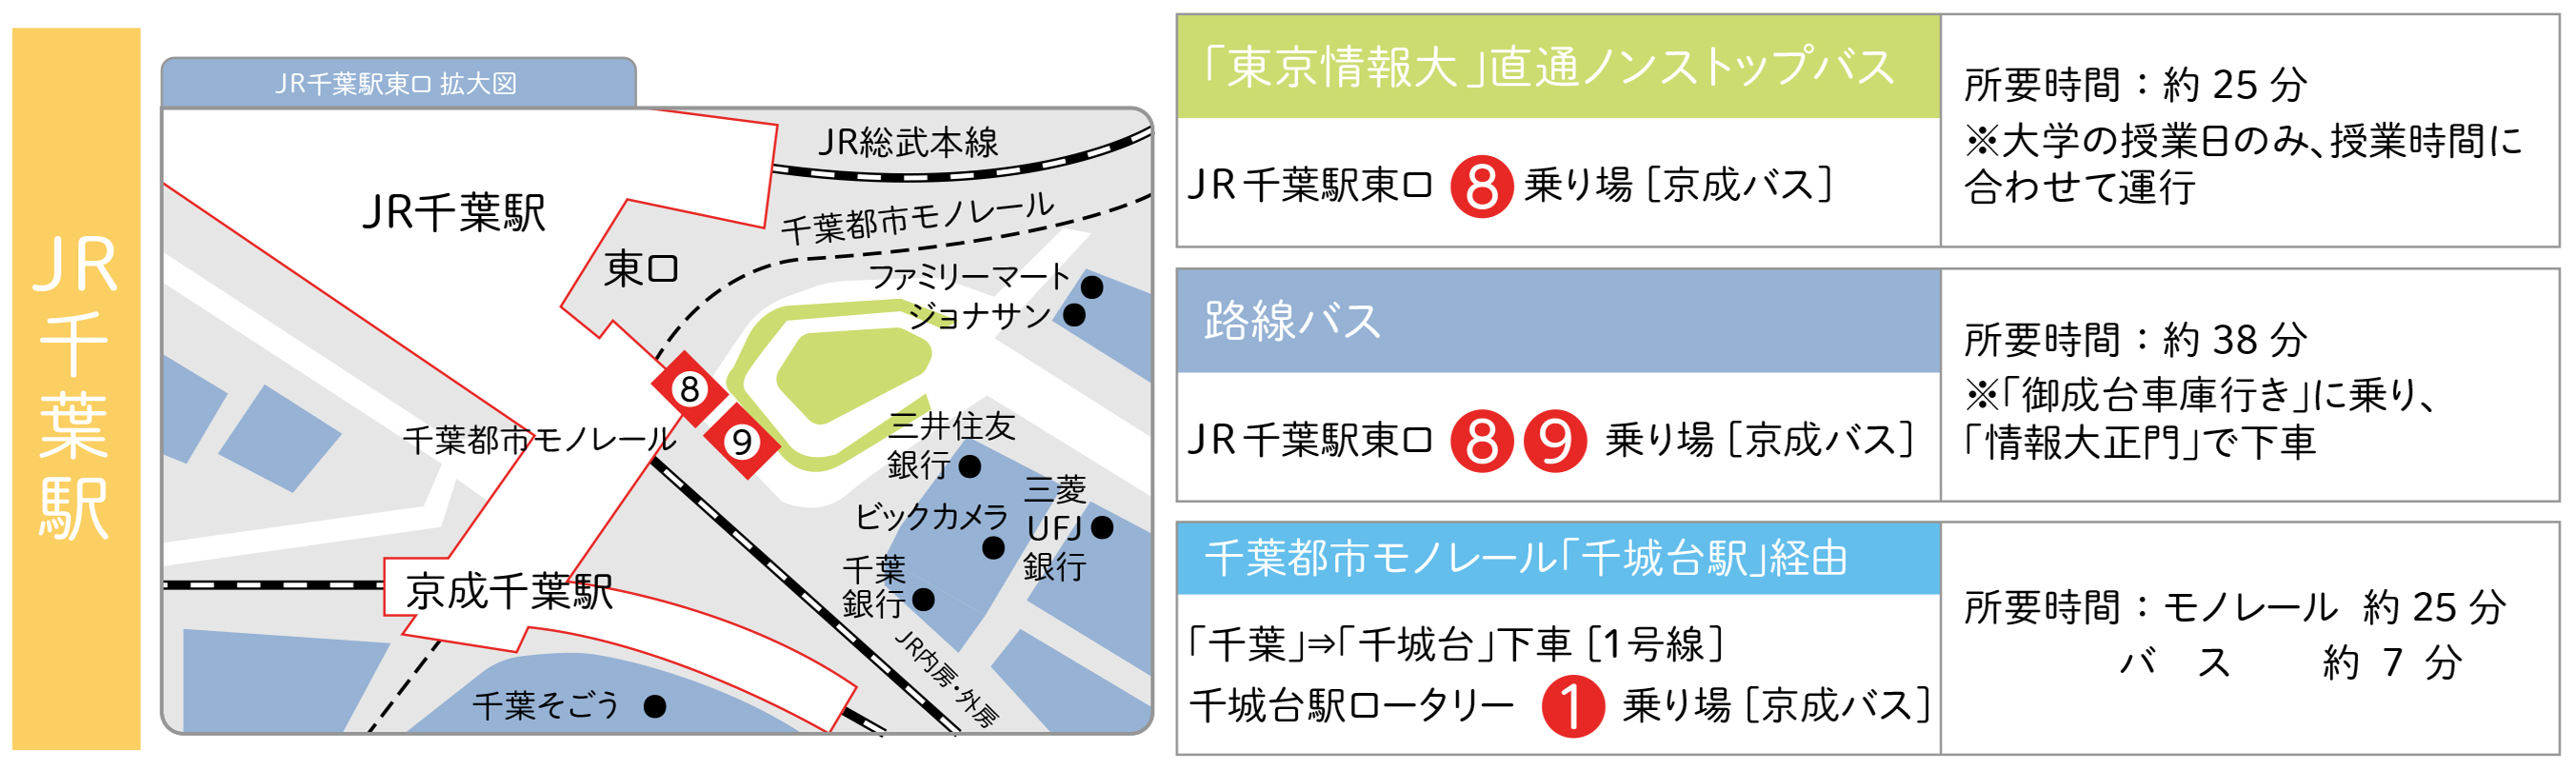 JR千葉駅からのアクセス